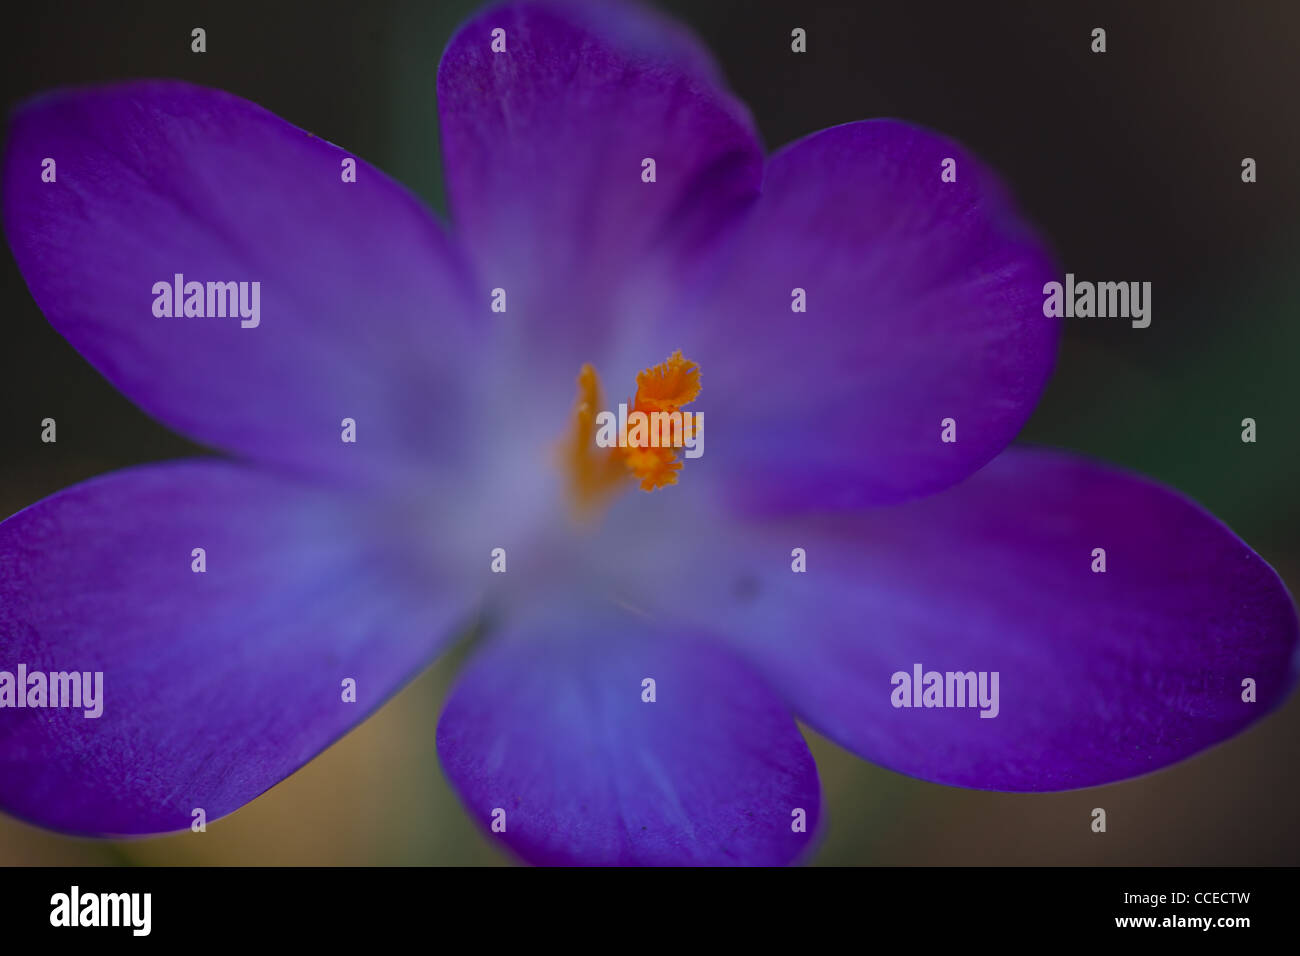 Nahaufnahme einer lila Blume zeigt die hellen orangefarbenen Staubfäden Stockfoto